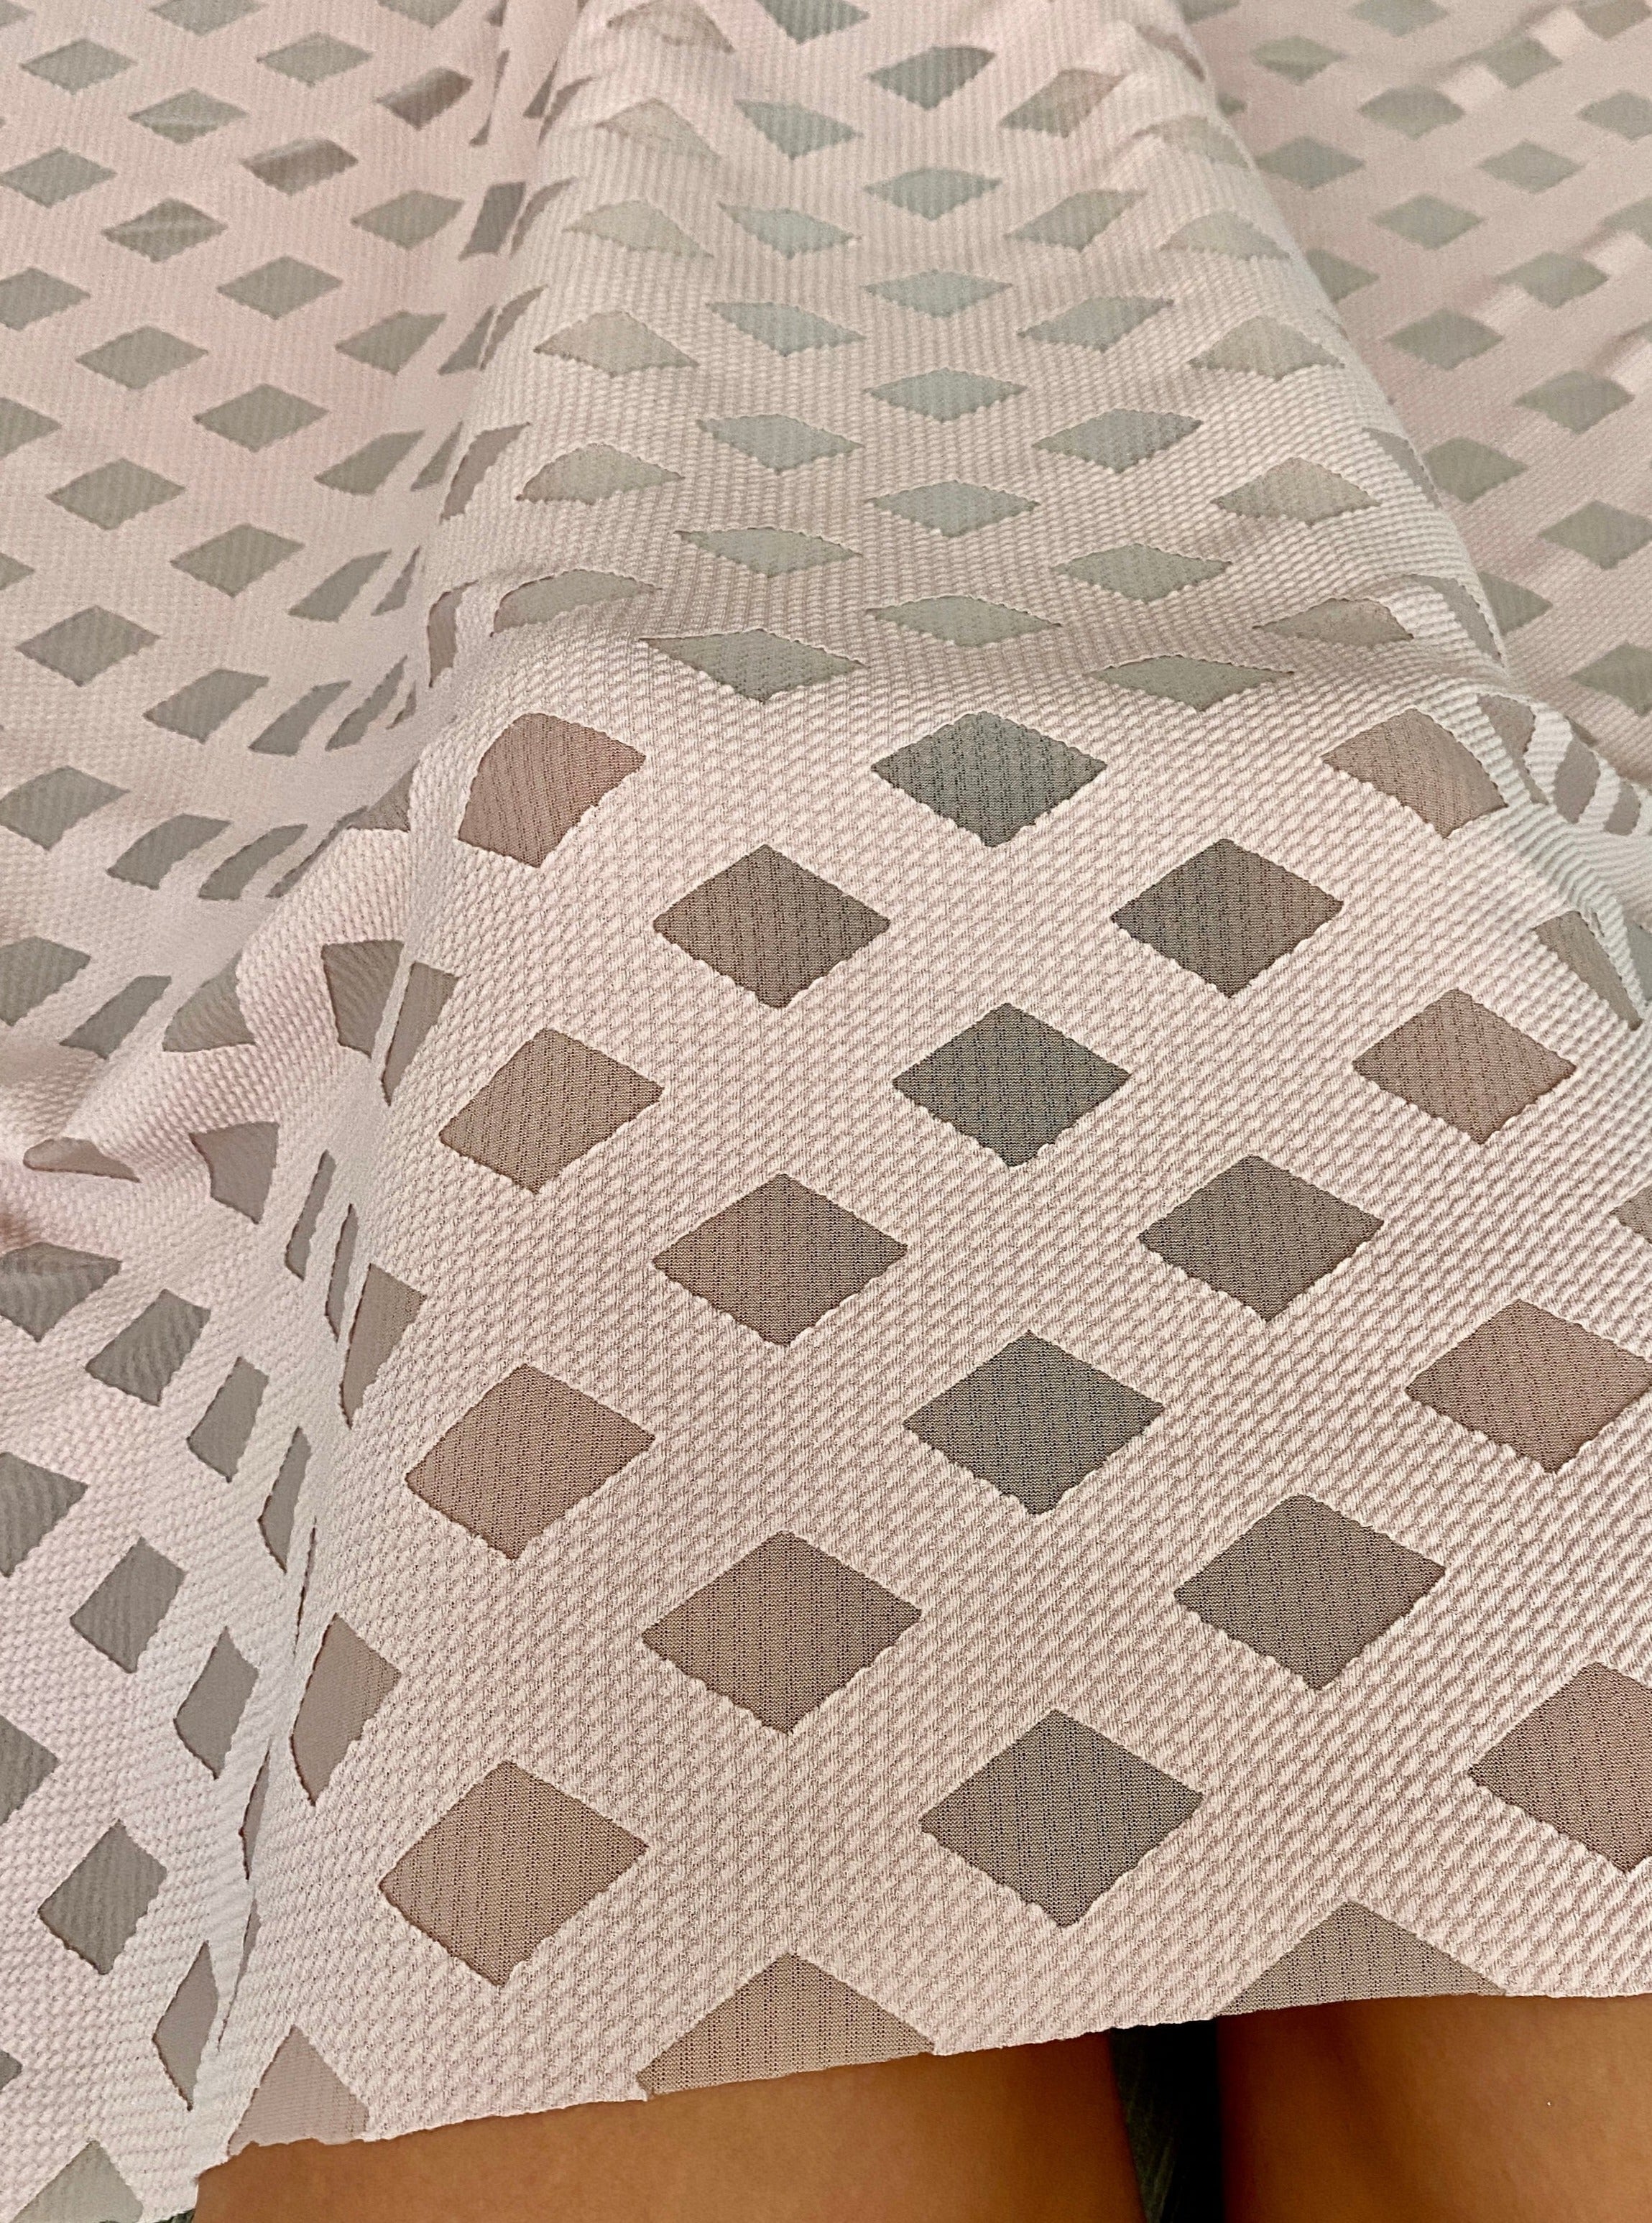 Nude Diamond Pattern Knit, diamond pattern knit fabric for woman, diamond pattern knit fabric for dress, knit fabric on discount, sale on knit fabric, buy knit fabric online, best quality knit fabric, cheap knit fabric, unique diamond knit fabric, premium knit fabric